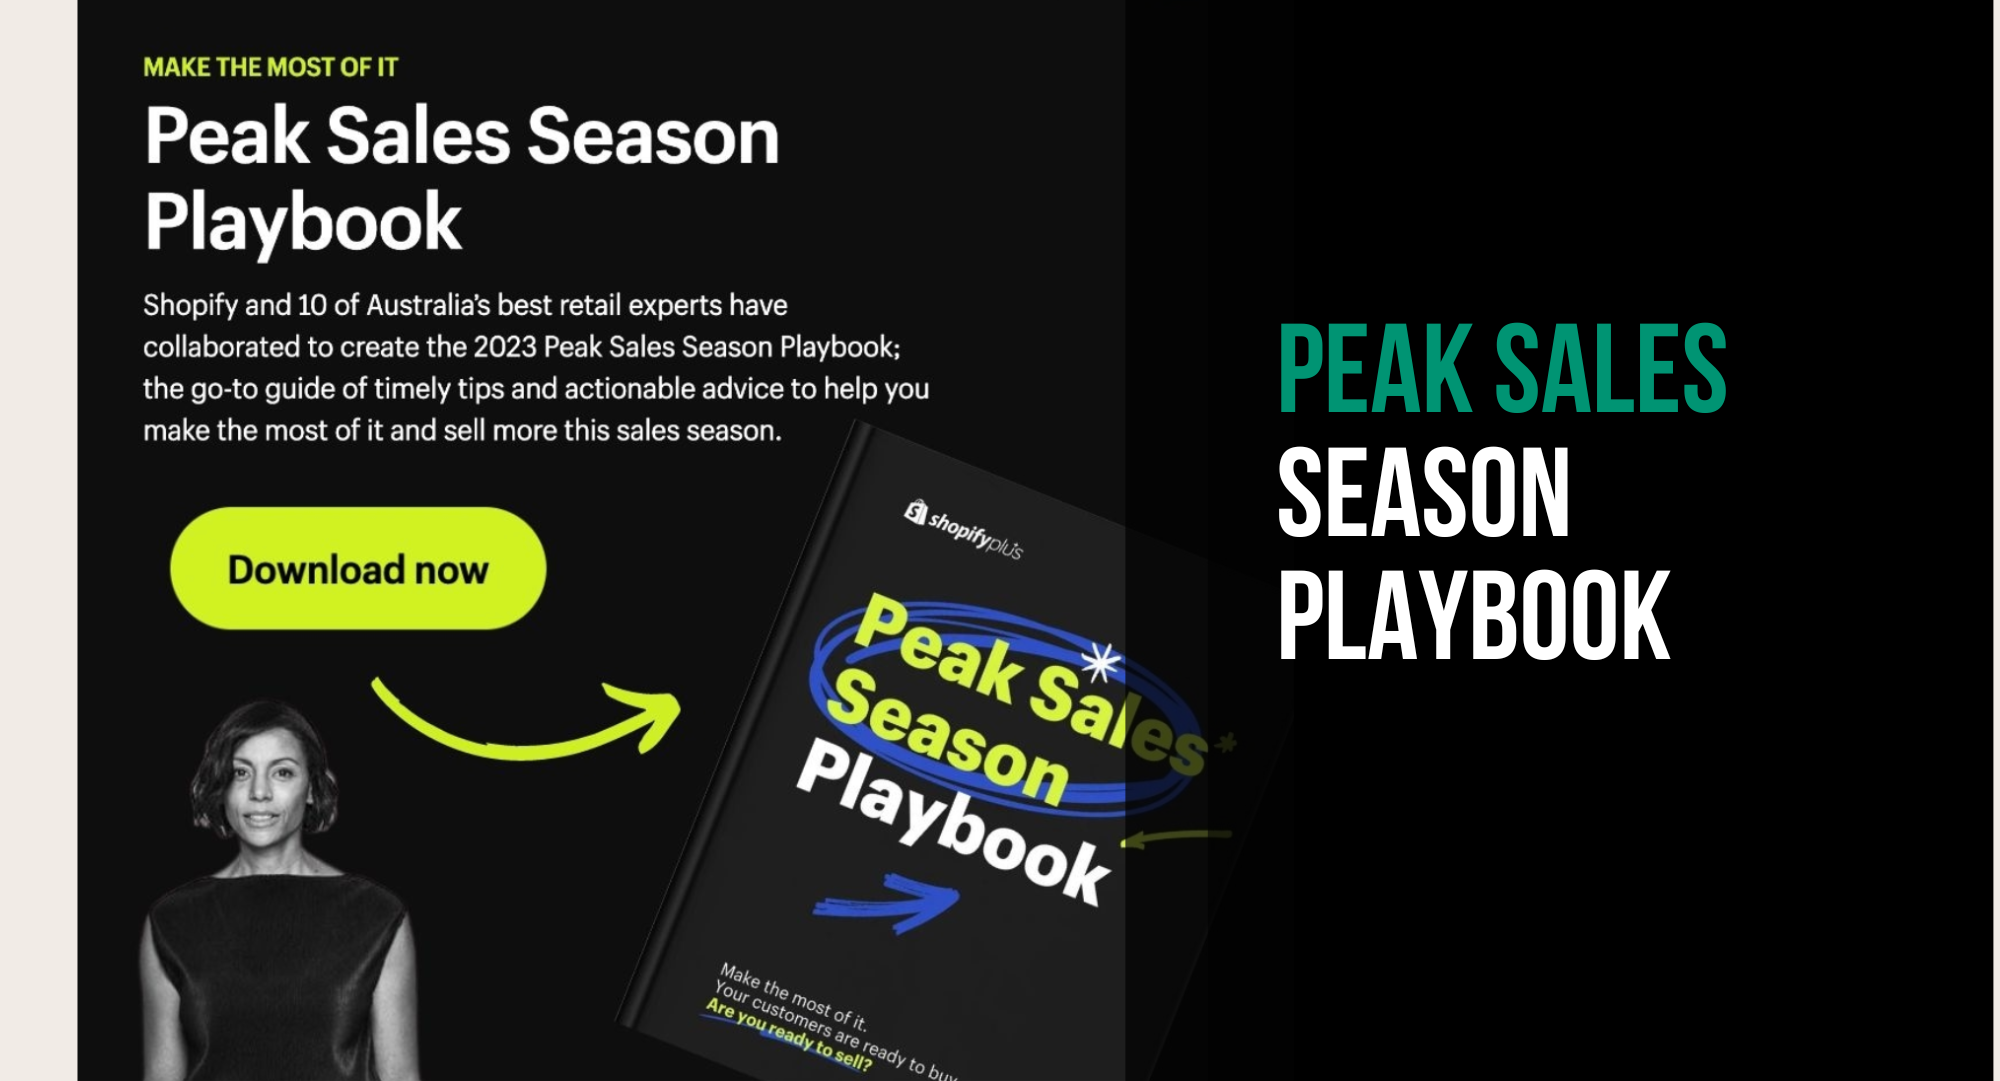 Peak Sales Season Playbook